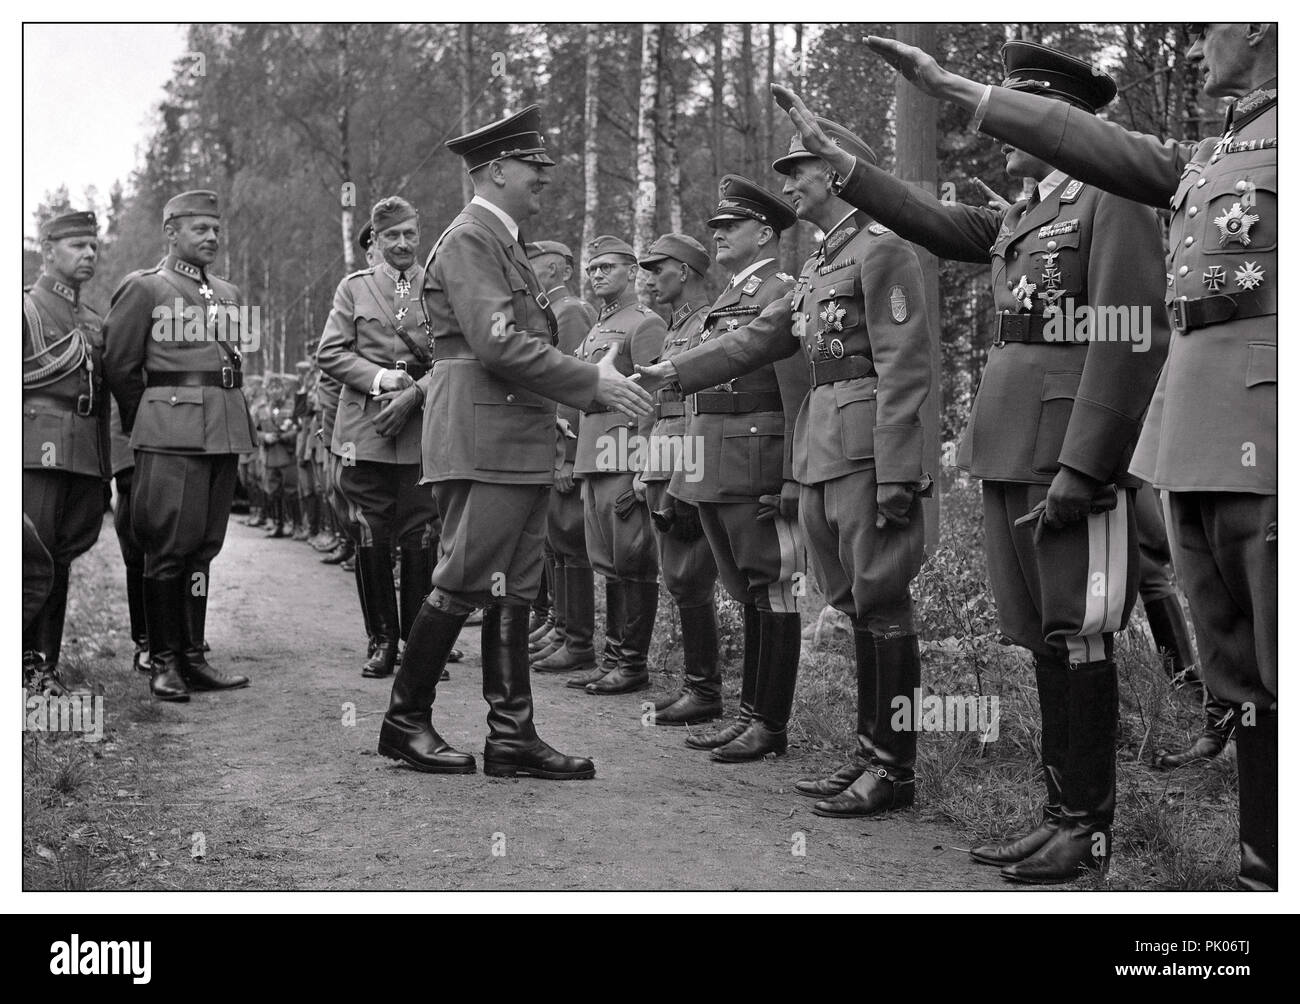 Deuxième Guerre mondiale RENCONTRE D'HITLER avec l'armée finlandaise et des officiers de haut rang de l'armée allemande qui lui donnent le salut nazi Heil Hitler, avec le maréchal Mannerheim derrière.Adolf Hitler s'est rendu en Finlande le 4 juin 1942, ostensiblement pour féliciter Mannerheim pour son 75e anniversaire.Mannerheim ne voulait pas le rencontrer à son siège d'Helsinki.La réunion a eu lieu près d'Imatra, dans le sud-est de la Finlande, et a été organisée dans le secret.De l'aérodrome d'Immola, Hitler, accompagné du président Ryti, a été conduit jusqu'à l'endroit où Mannerheim attendait une voie d'évitement ferroviaire.La réunion n'a pas été concluante... Banque D'Images